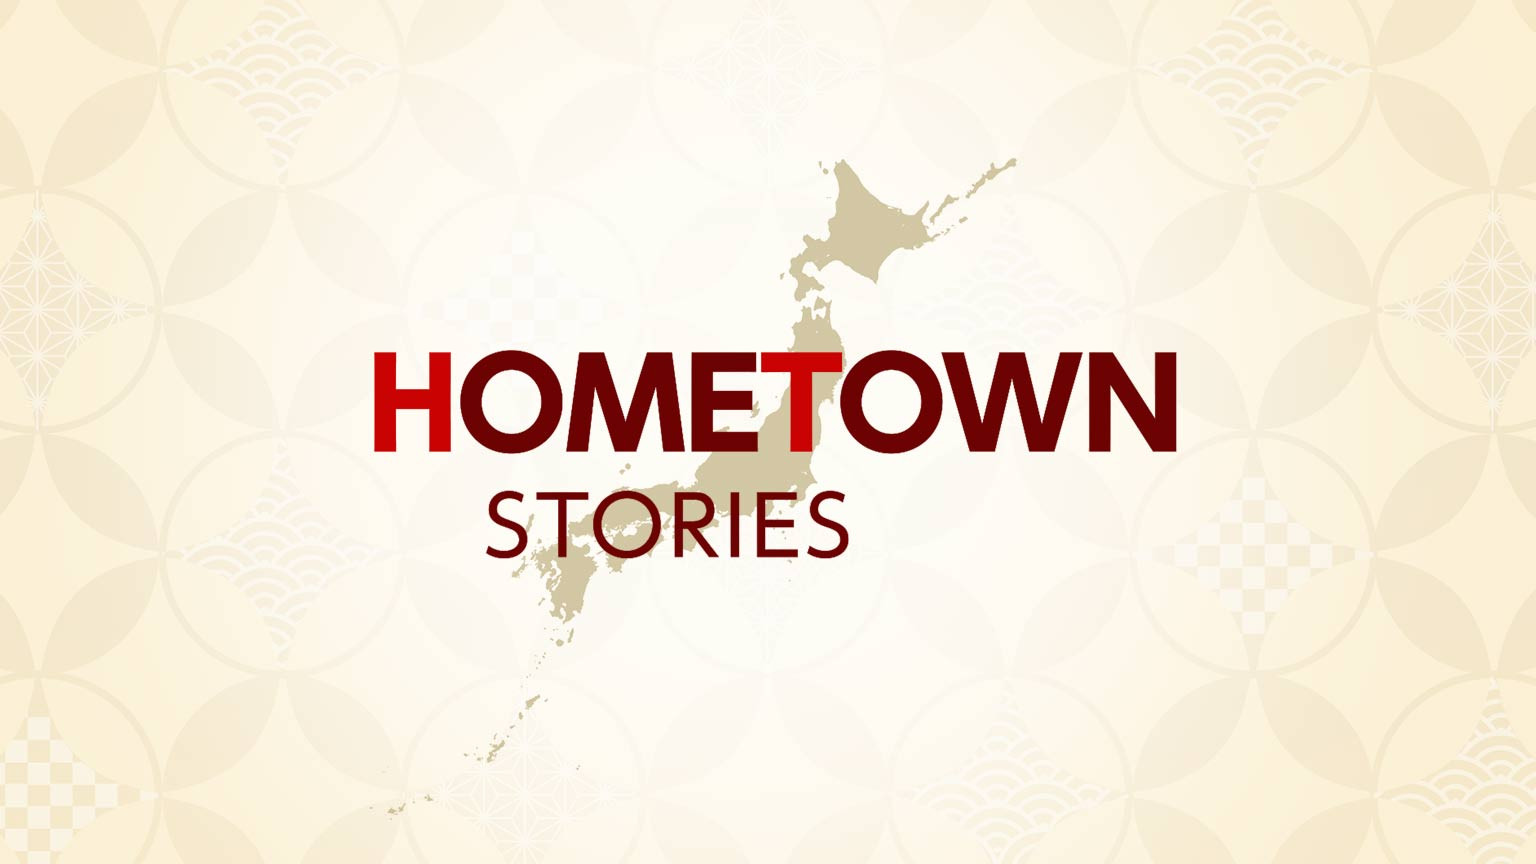 Kehidupan di Jepang
Hometown Stories